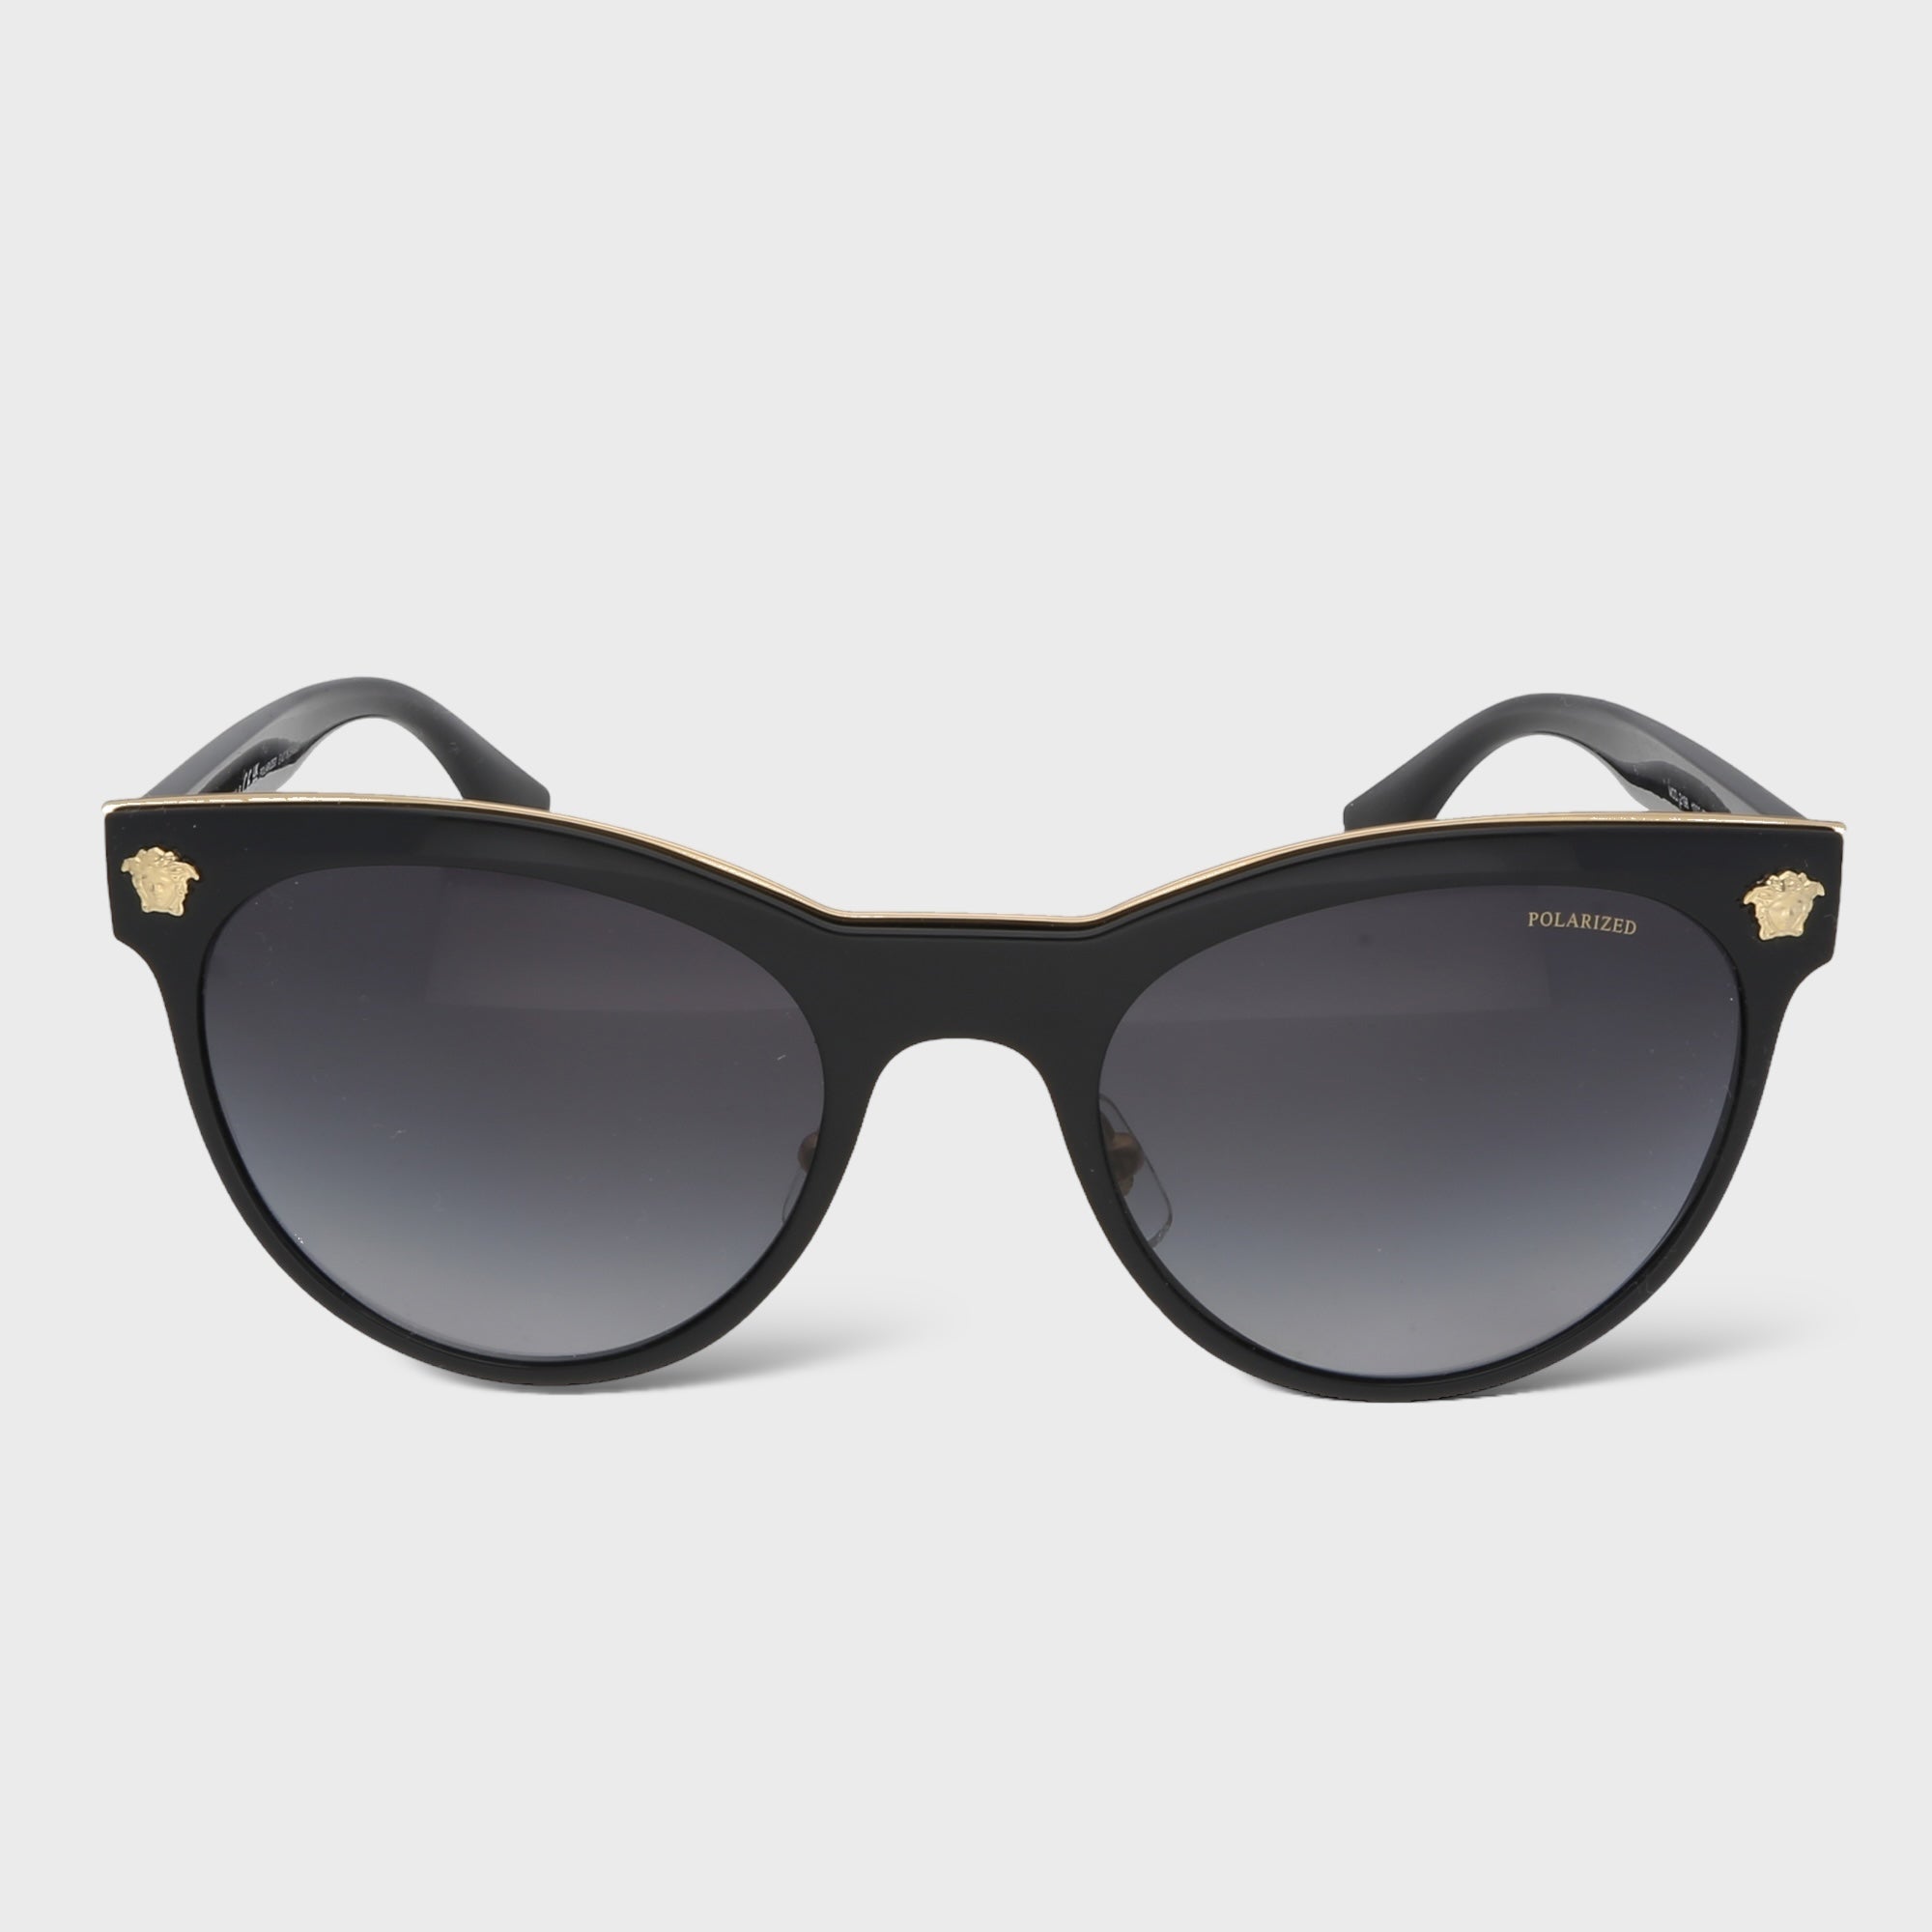 Second Hand Luxus Sonnenbrille jetzt online kaufen auf kaleaz.